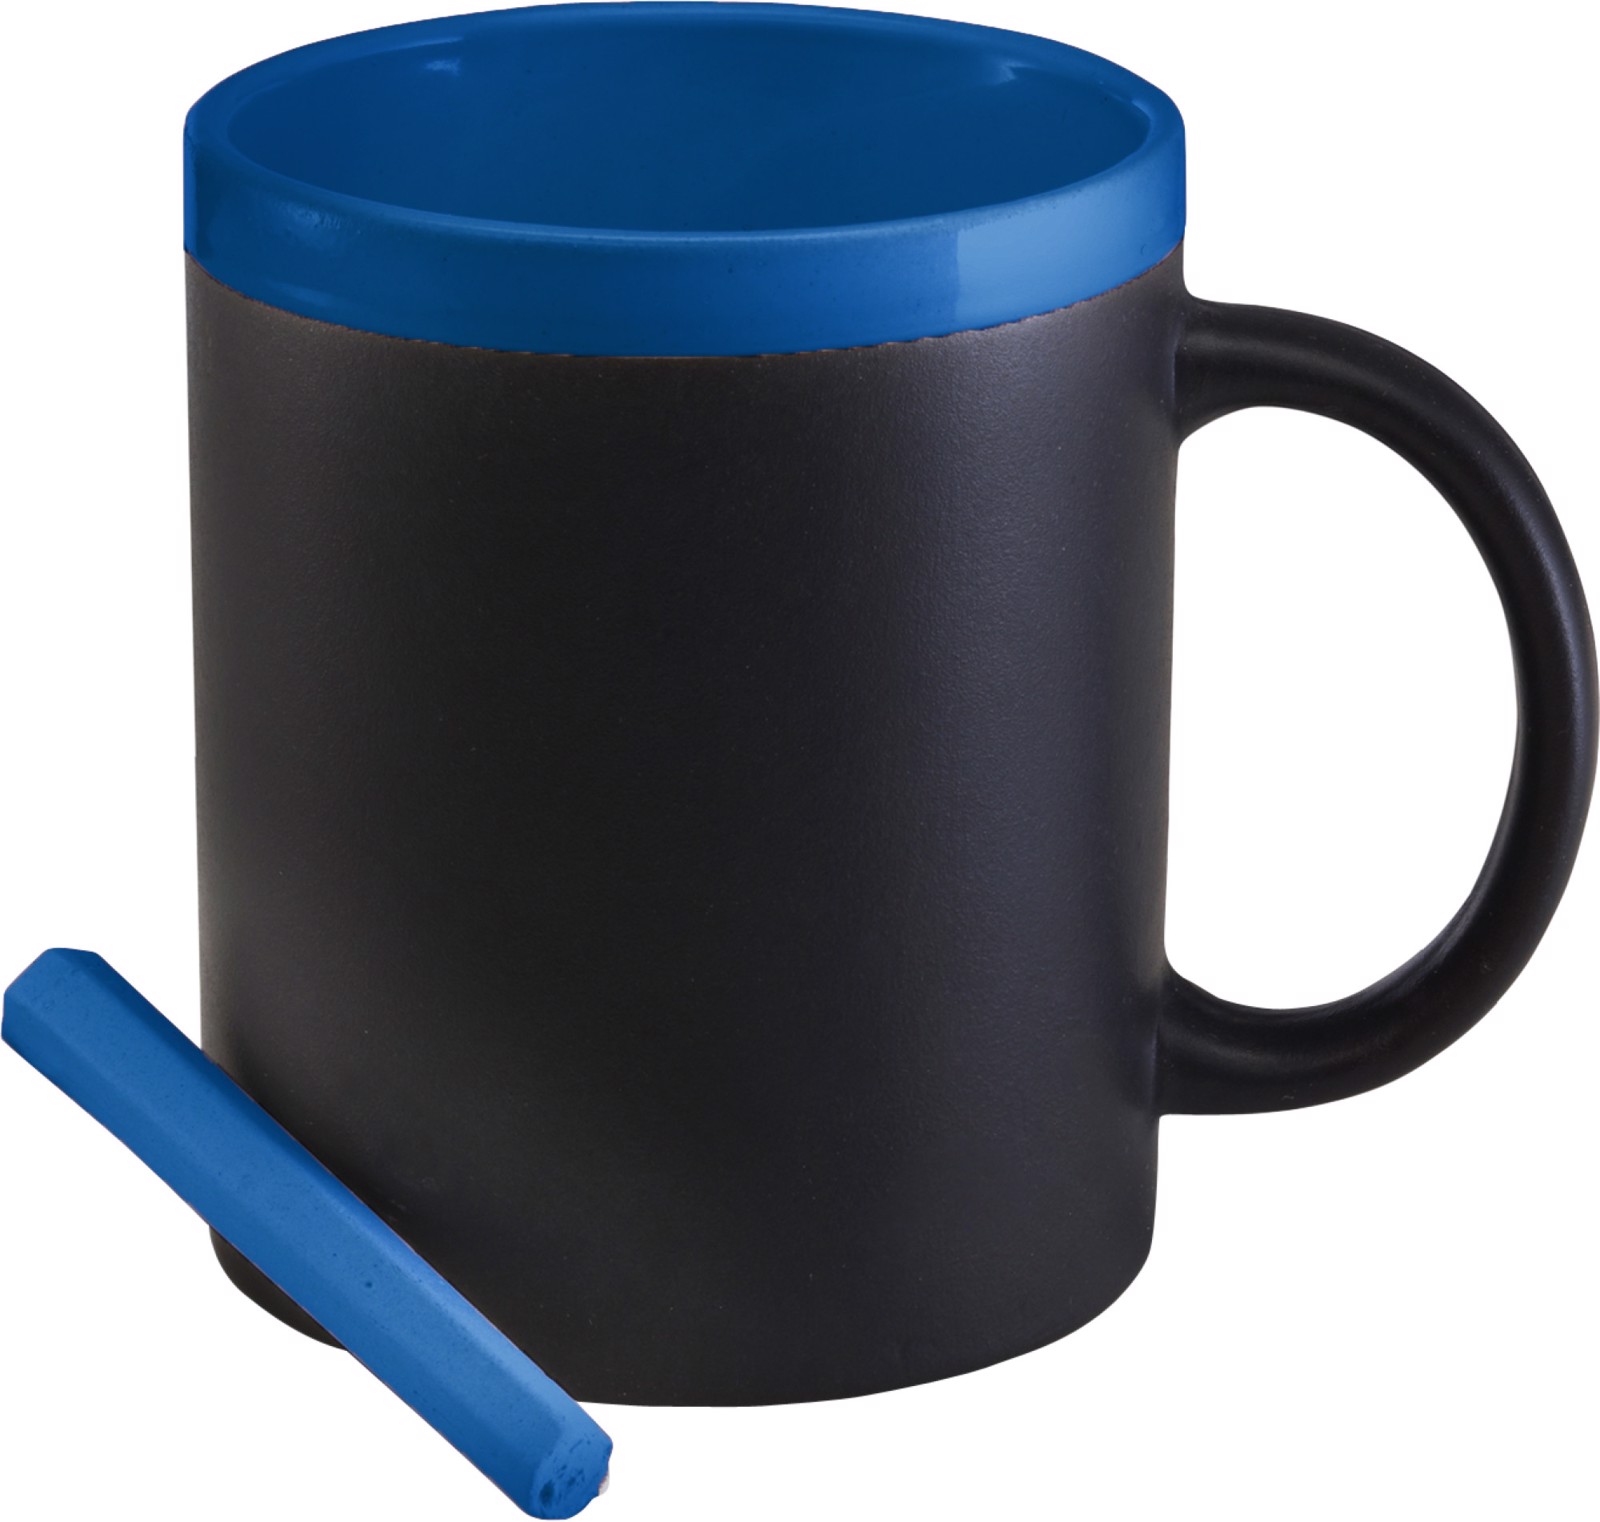 Ceramic mug - Cobalt Blue